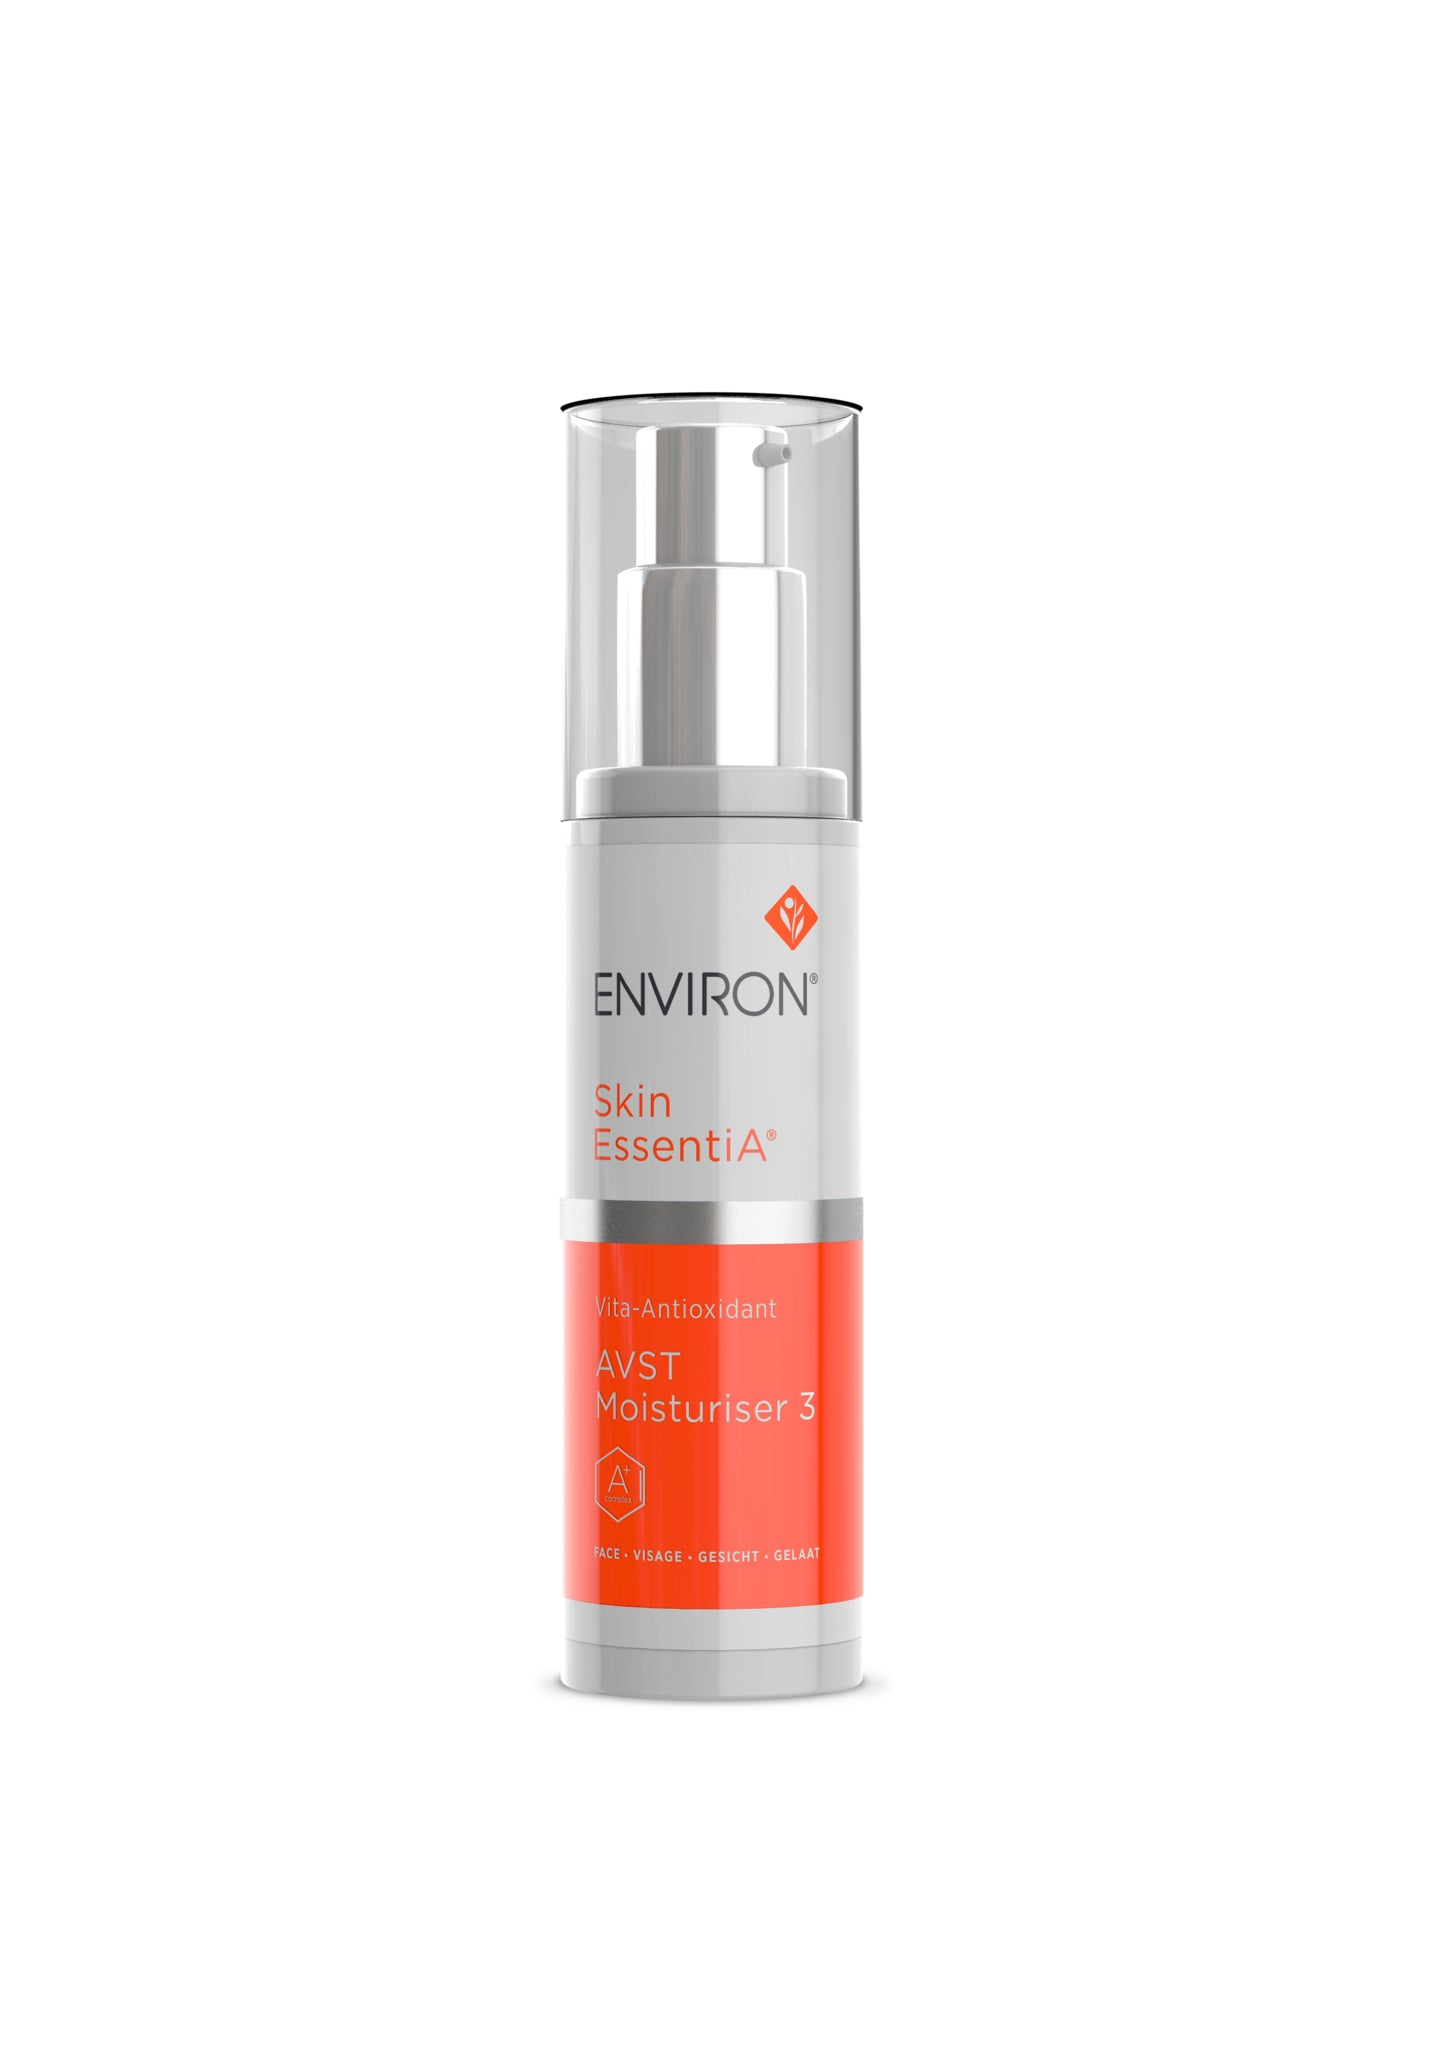 Environ Skin EssentiA® range - Vita-Antioxiant AVST Moisturiser 3